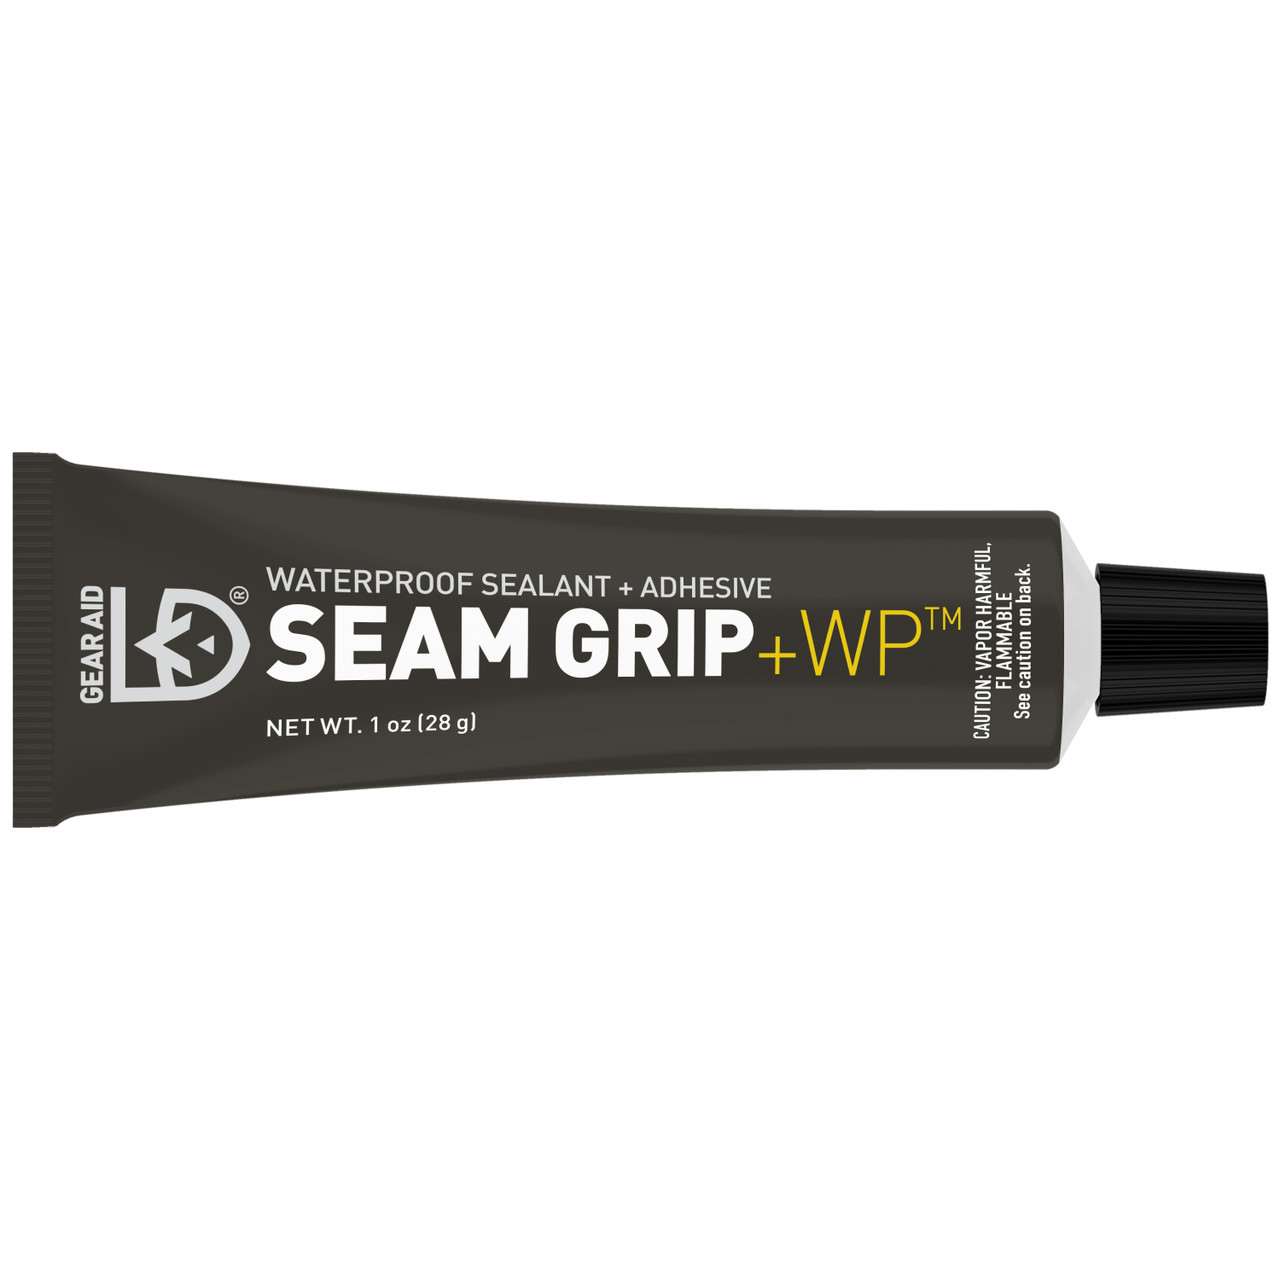 Seam Grip+WP Waterproof Sealant and Adhesive NO_COLOUR